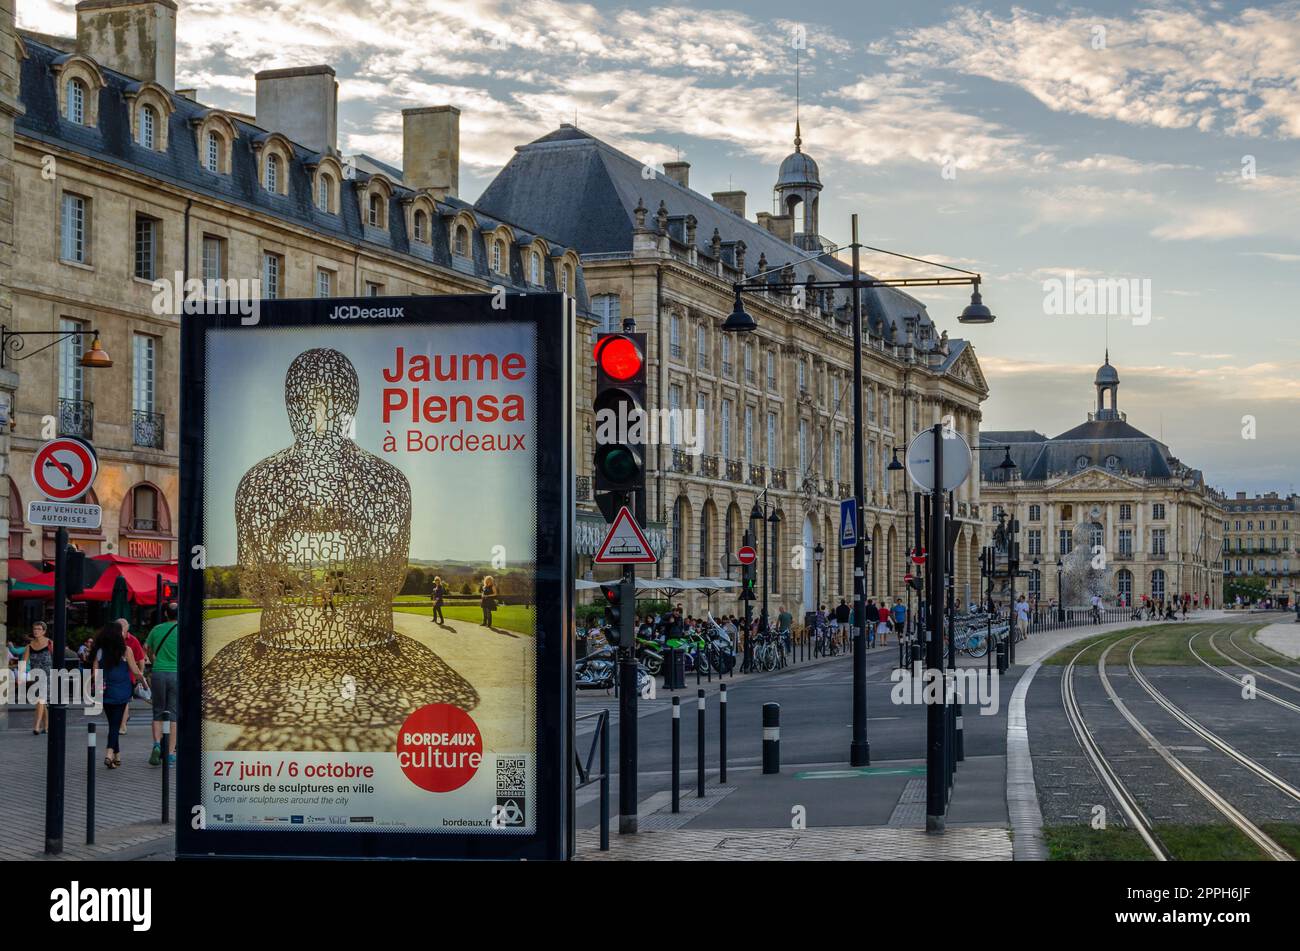 BORDEAUX, FRANCE- 16 AOÛT 2013 : paysage urbain à Bordeaux, France au premier plan une affiche annonçant l'exposition temporaire de diverses sculptures urbaines de l'artiste espagnol Jaume Plensa Banque D'Images